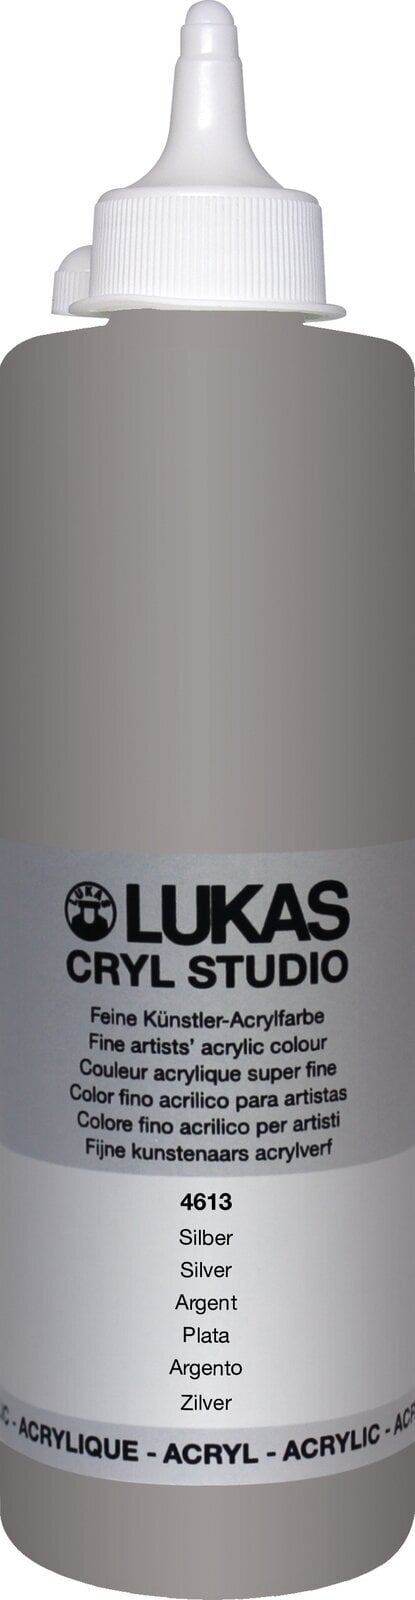 Acrylverf Lukas Cryl Studio Acrylverf 500 ml Silver